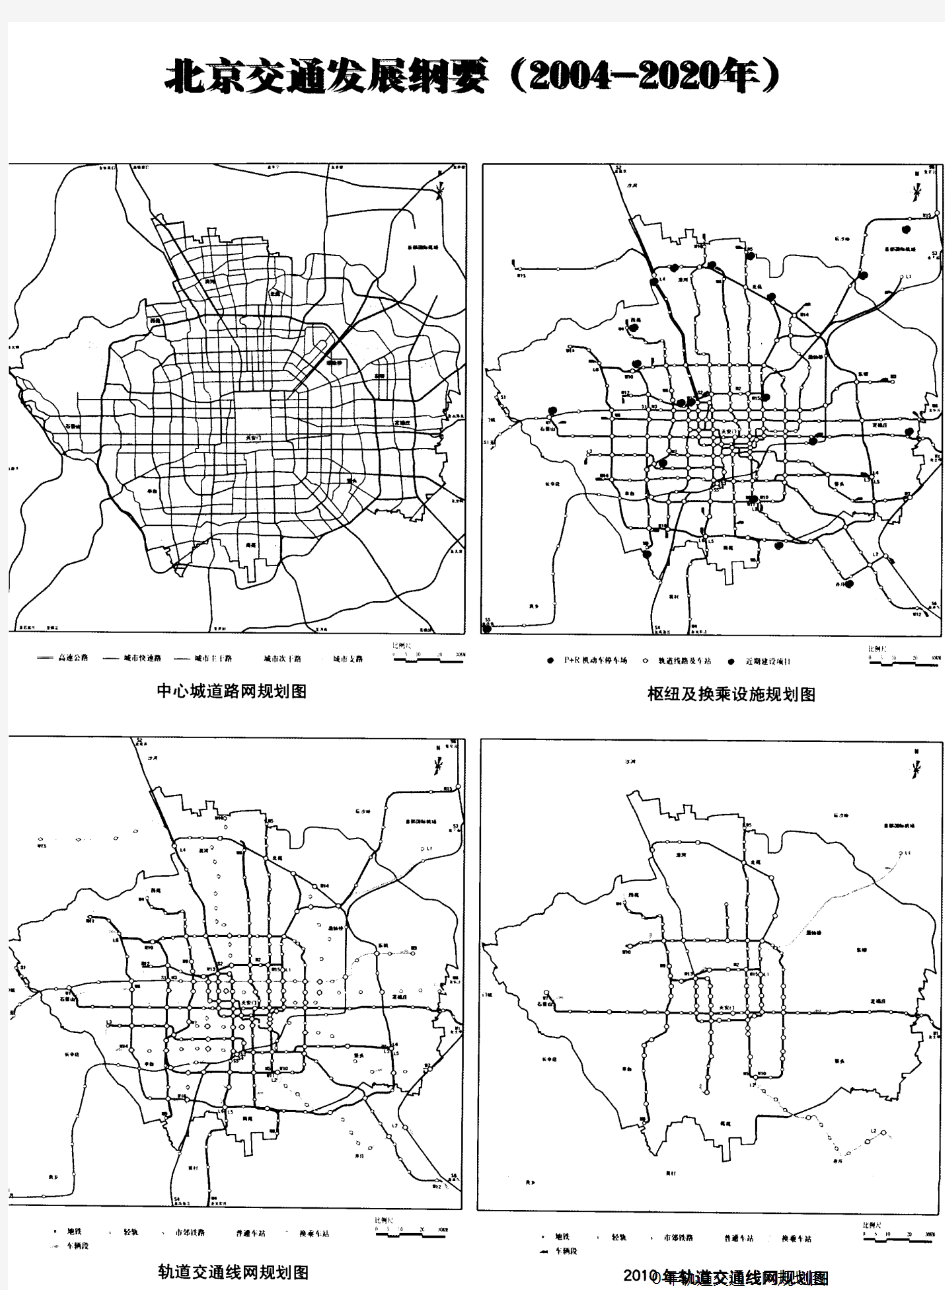 北京交通发展纲要(2004-2020年)